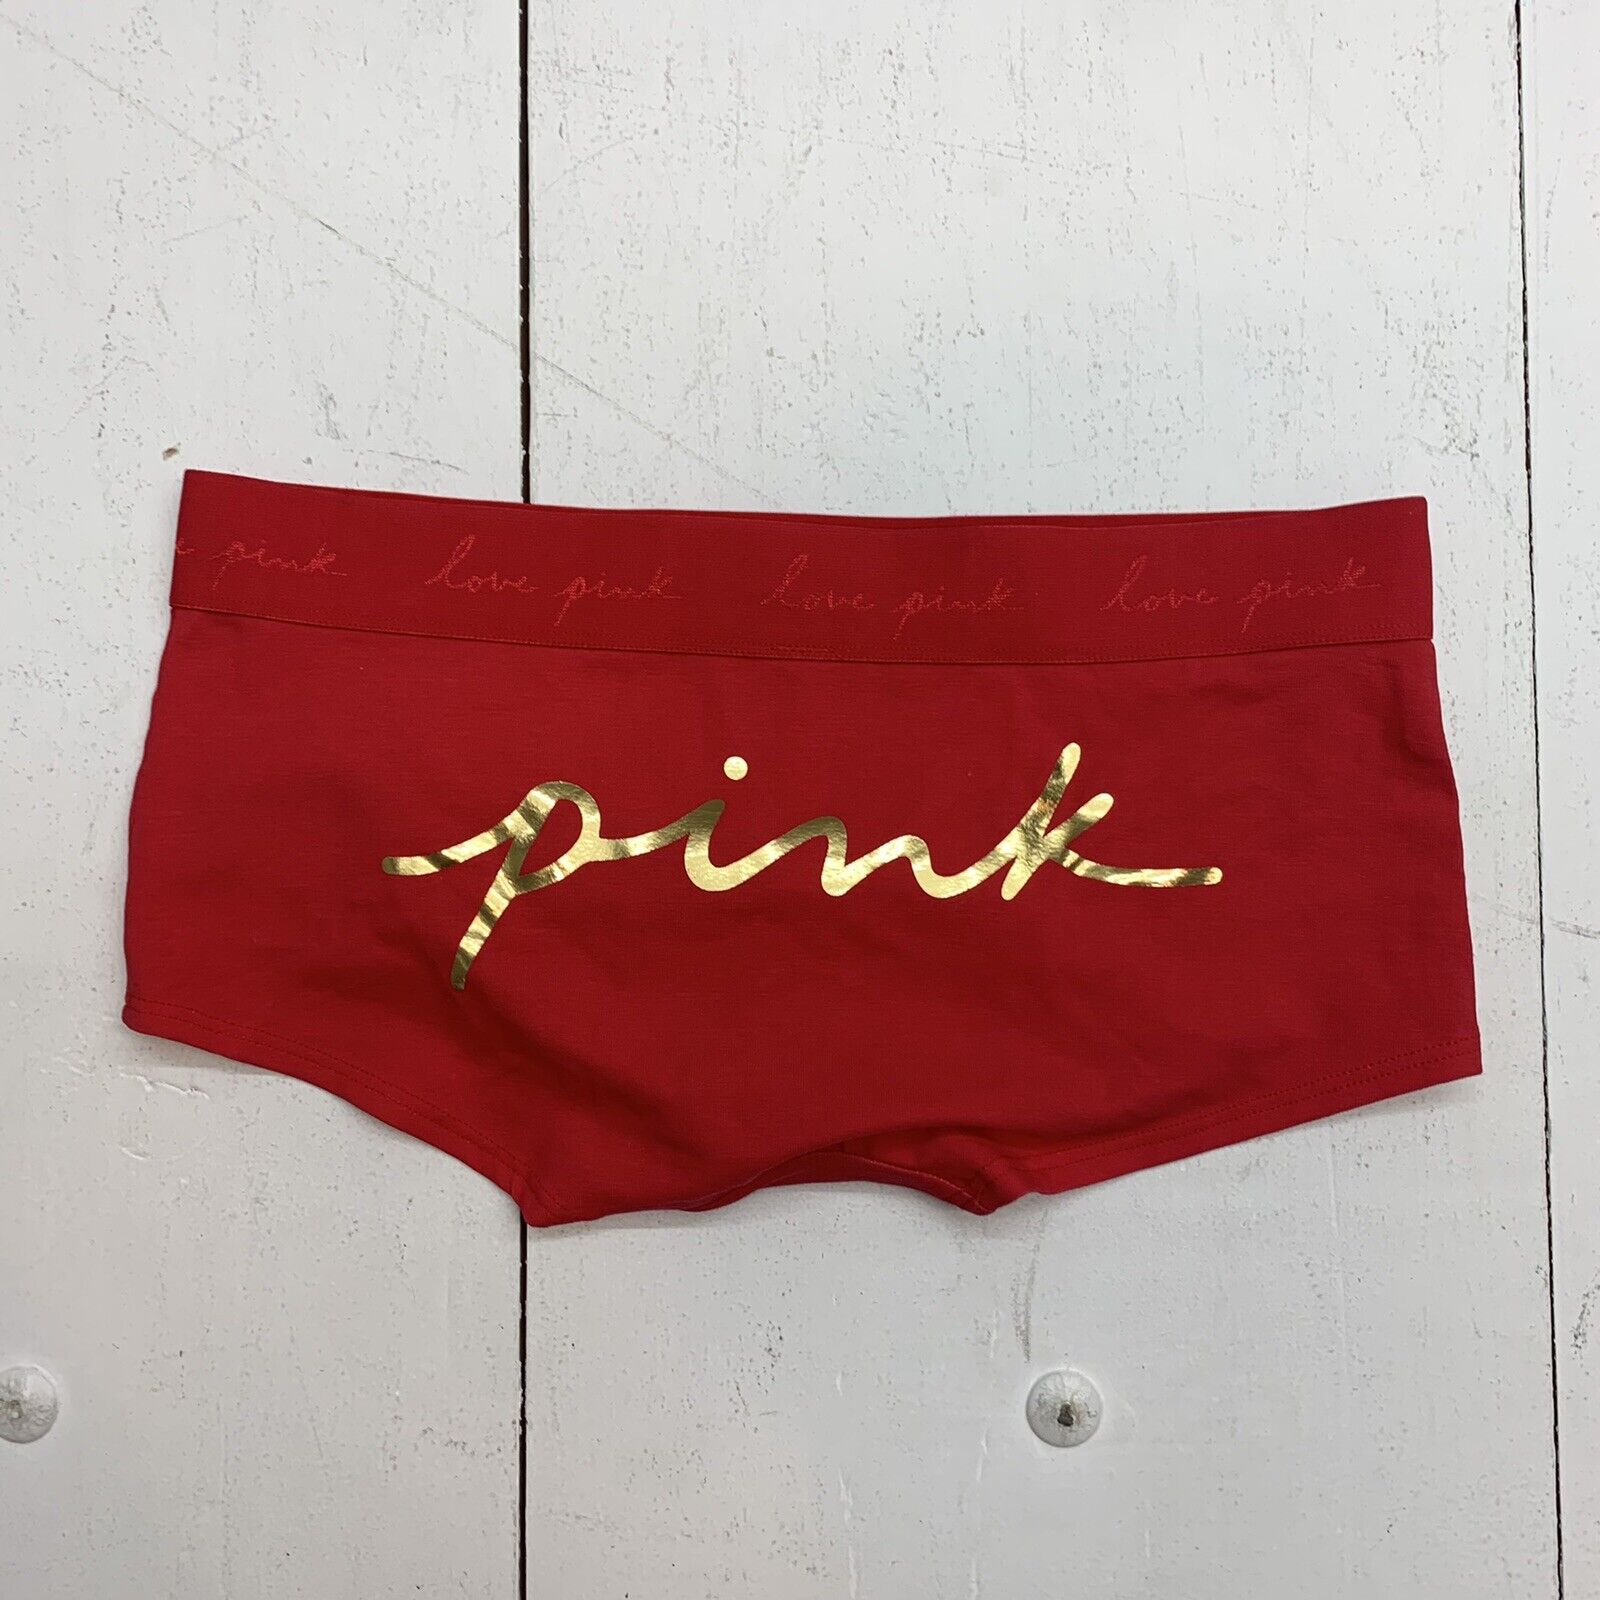 Victoria’s Secret Pink underwear